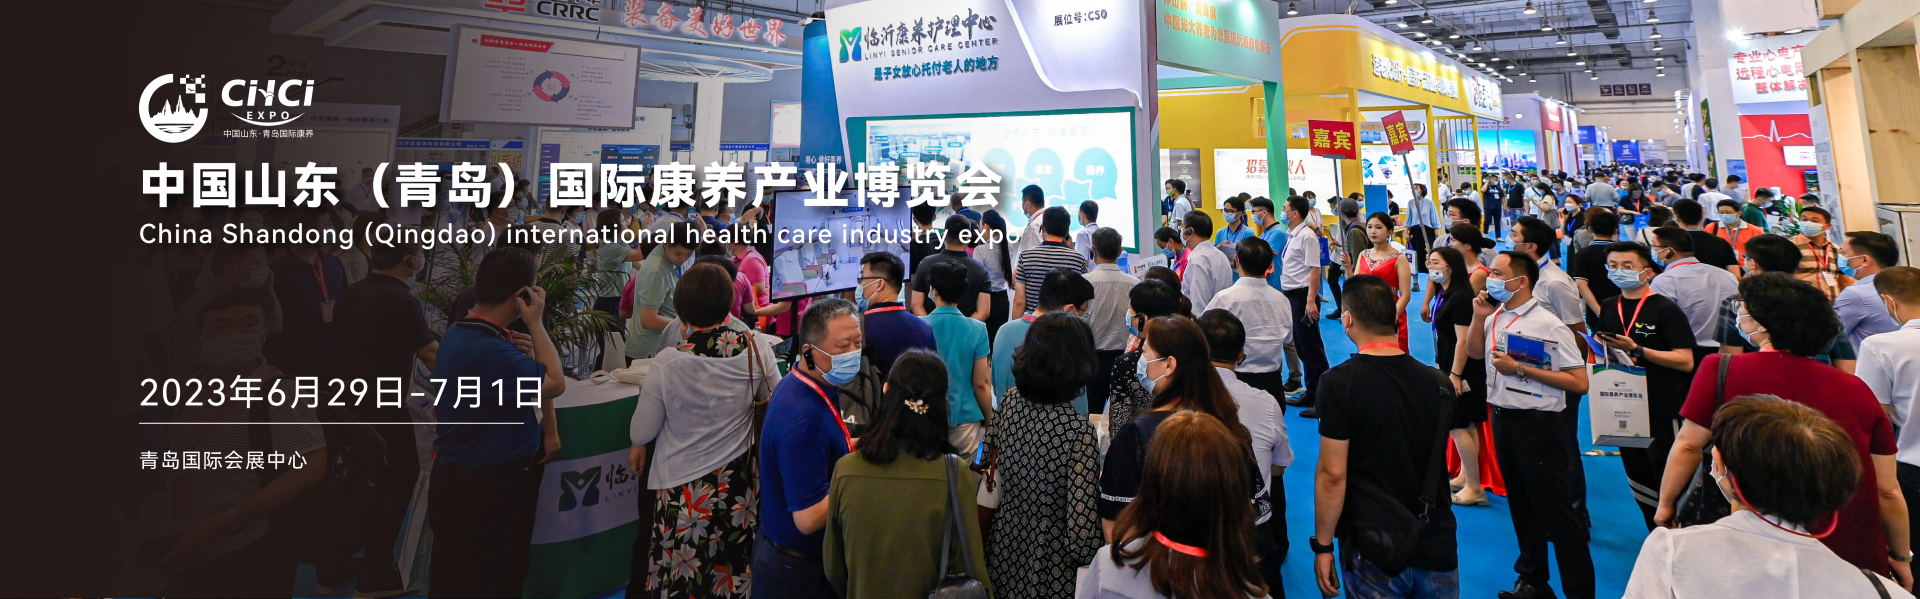 中国山东(青岛)国际康养产业博览会 2023